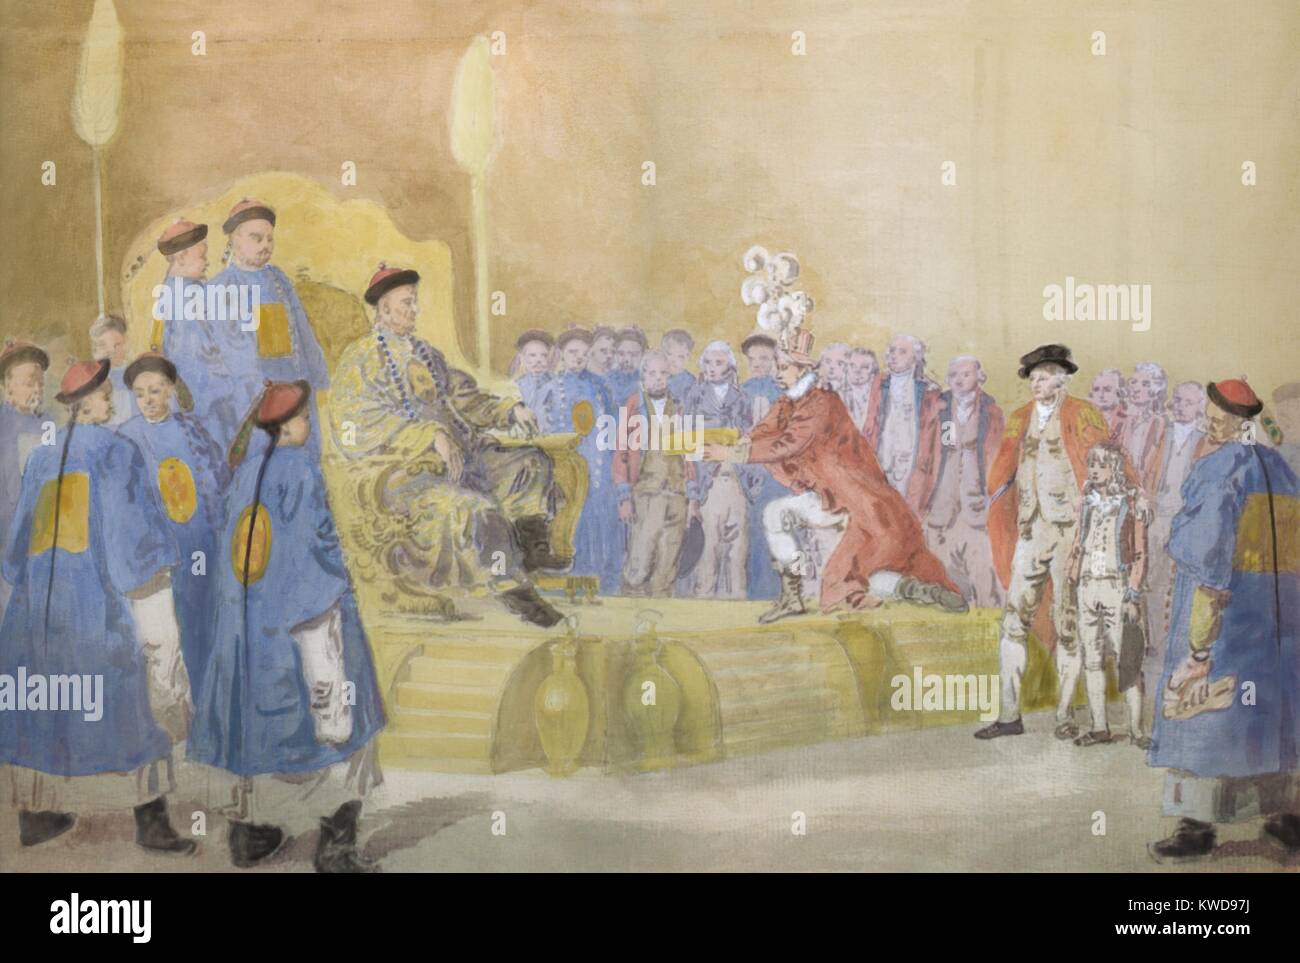 L'Ambassadeur britannique George MacCartney à genoux devant l'empereur Qianlong de la Chine, 14 sept 1793. Debout derrière l'empereur est vice-roi Liang Kentang et l'avenir de l'Empereur Jiaqing. À gauche de MacCartney sont George Staunton et son fils, parlant chinois (BSLOC 2016 9 1)DOUBLON SUPPRIMÉ : DOIT AVOIR ÉTÉ "7 Continents History', selon Barbara Schultz - JJ Banque D'Images